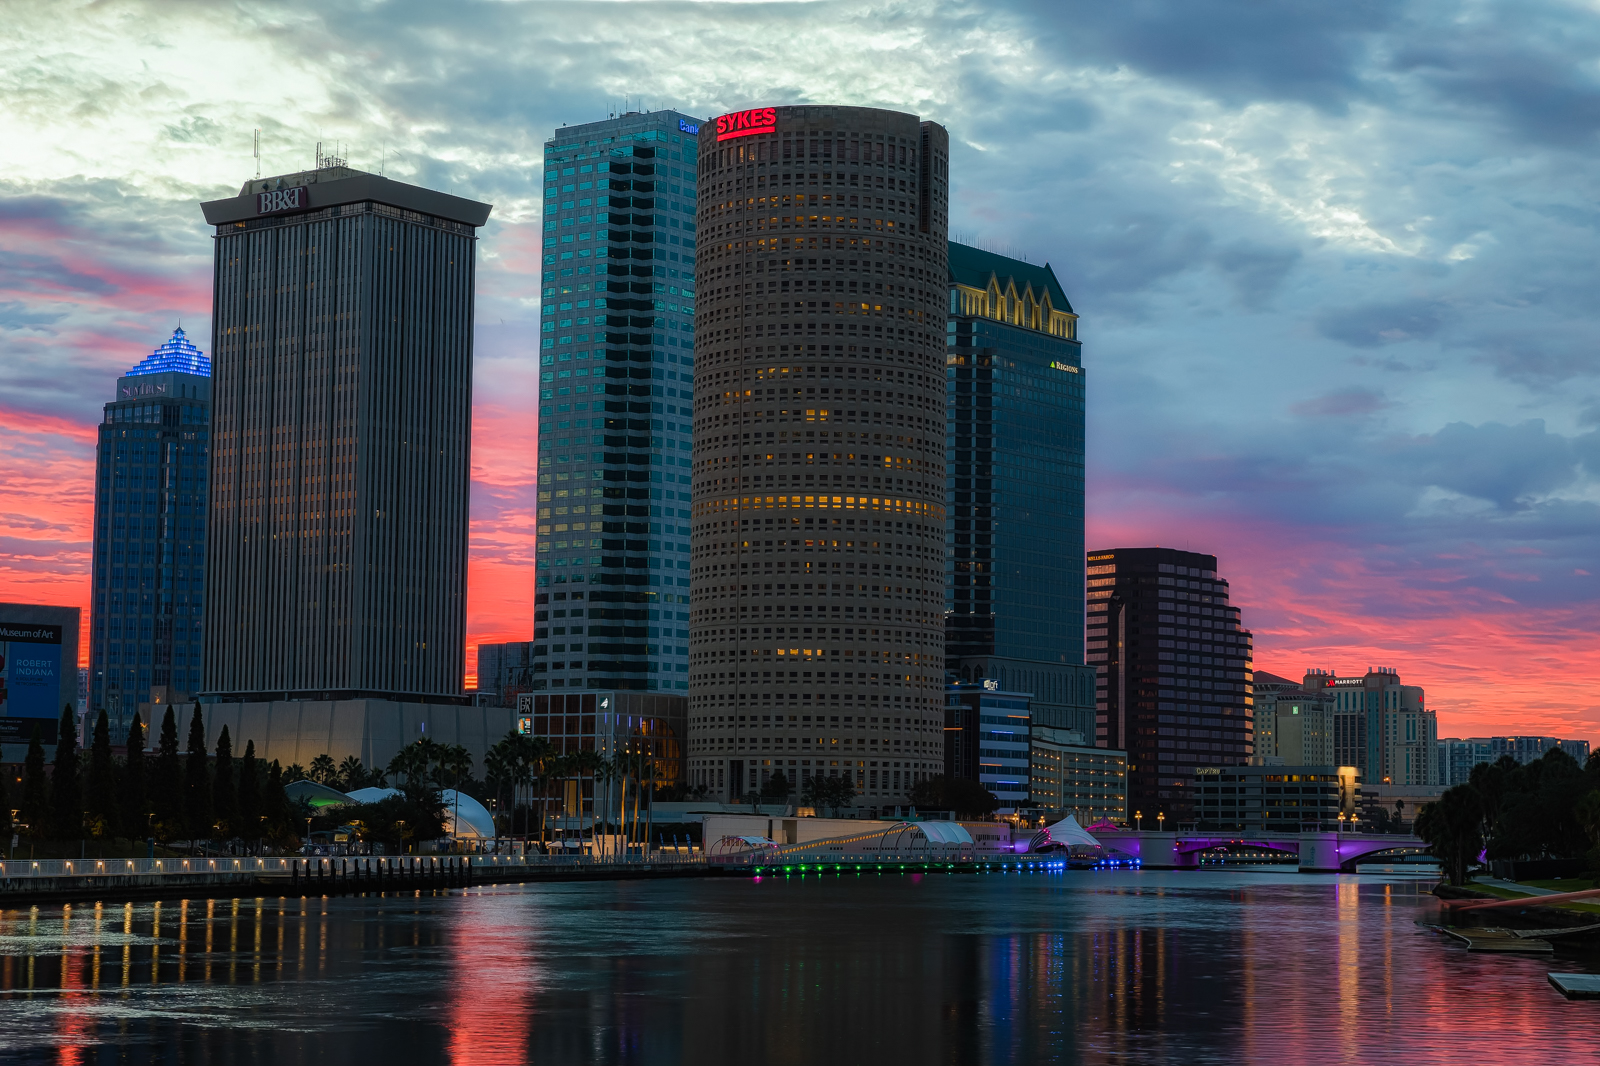 Pink Sky in Morning, Tampa, Florida